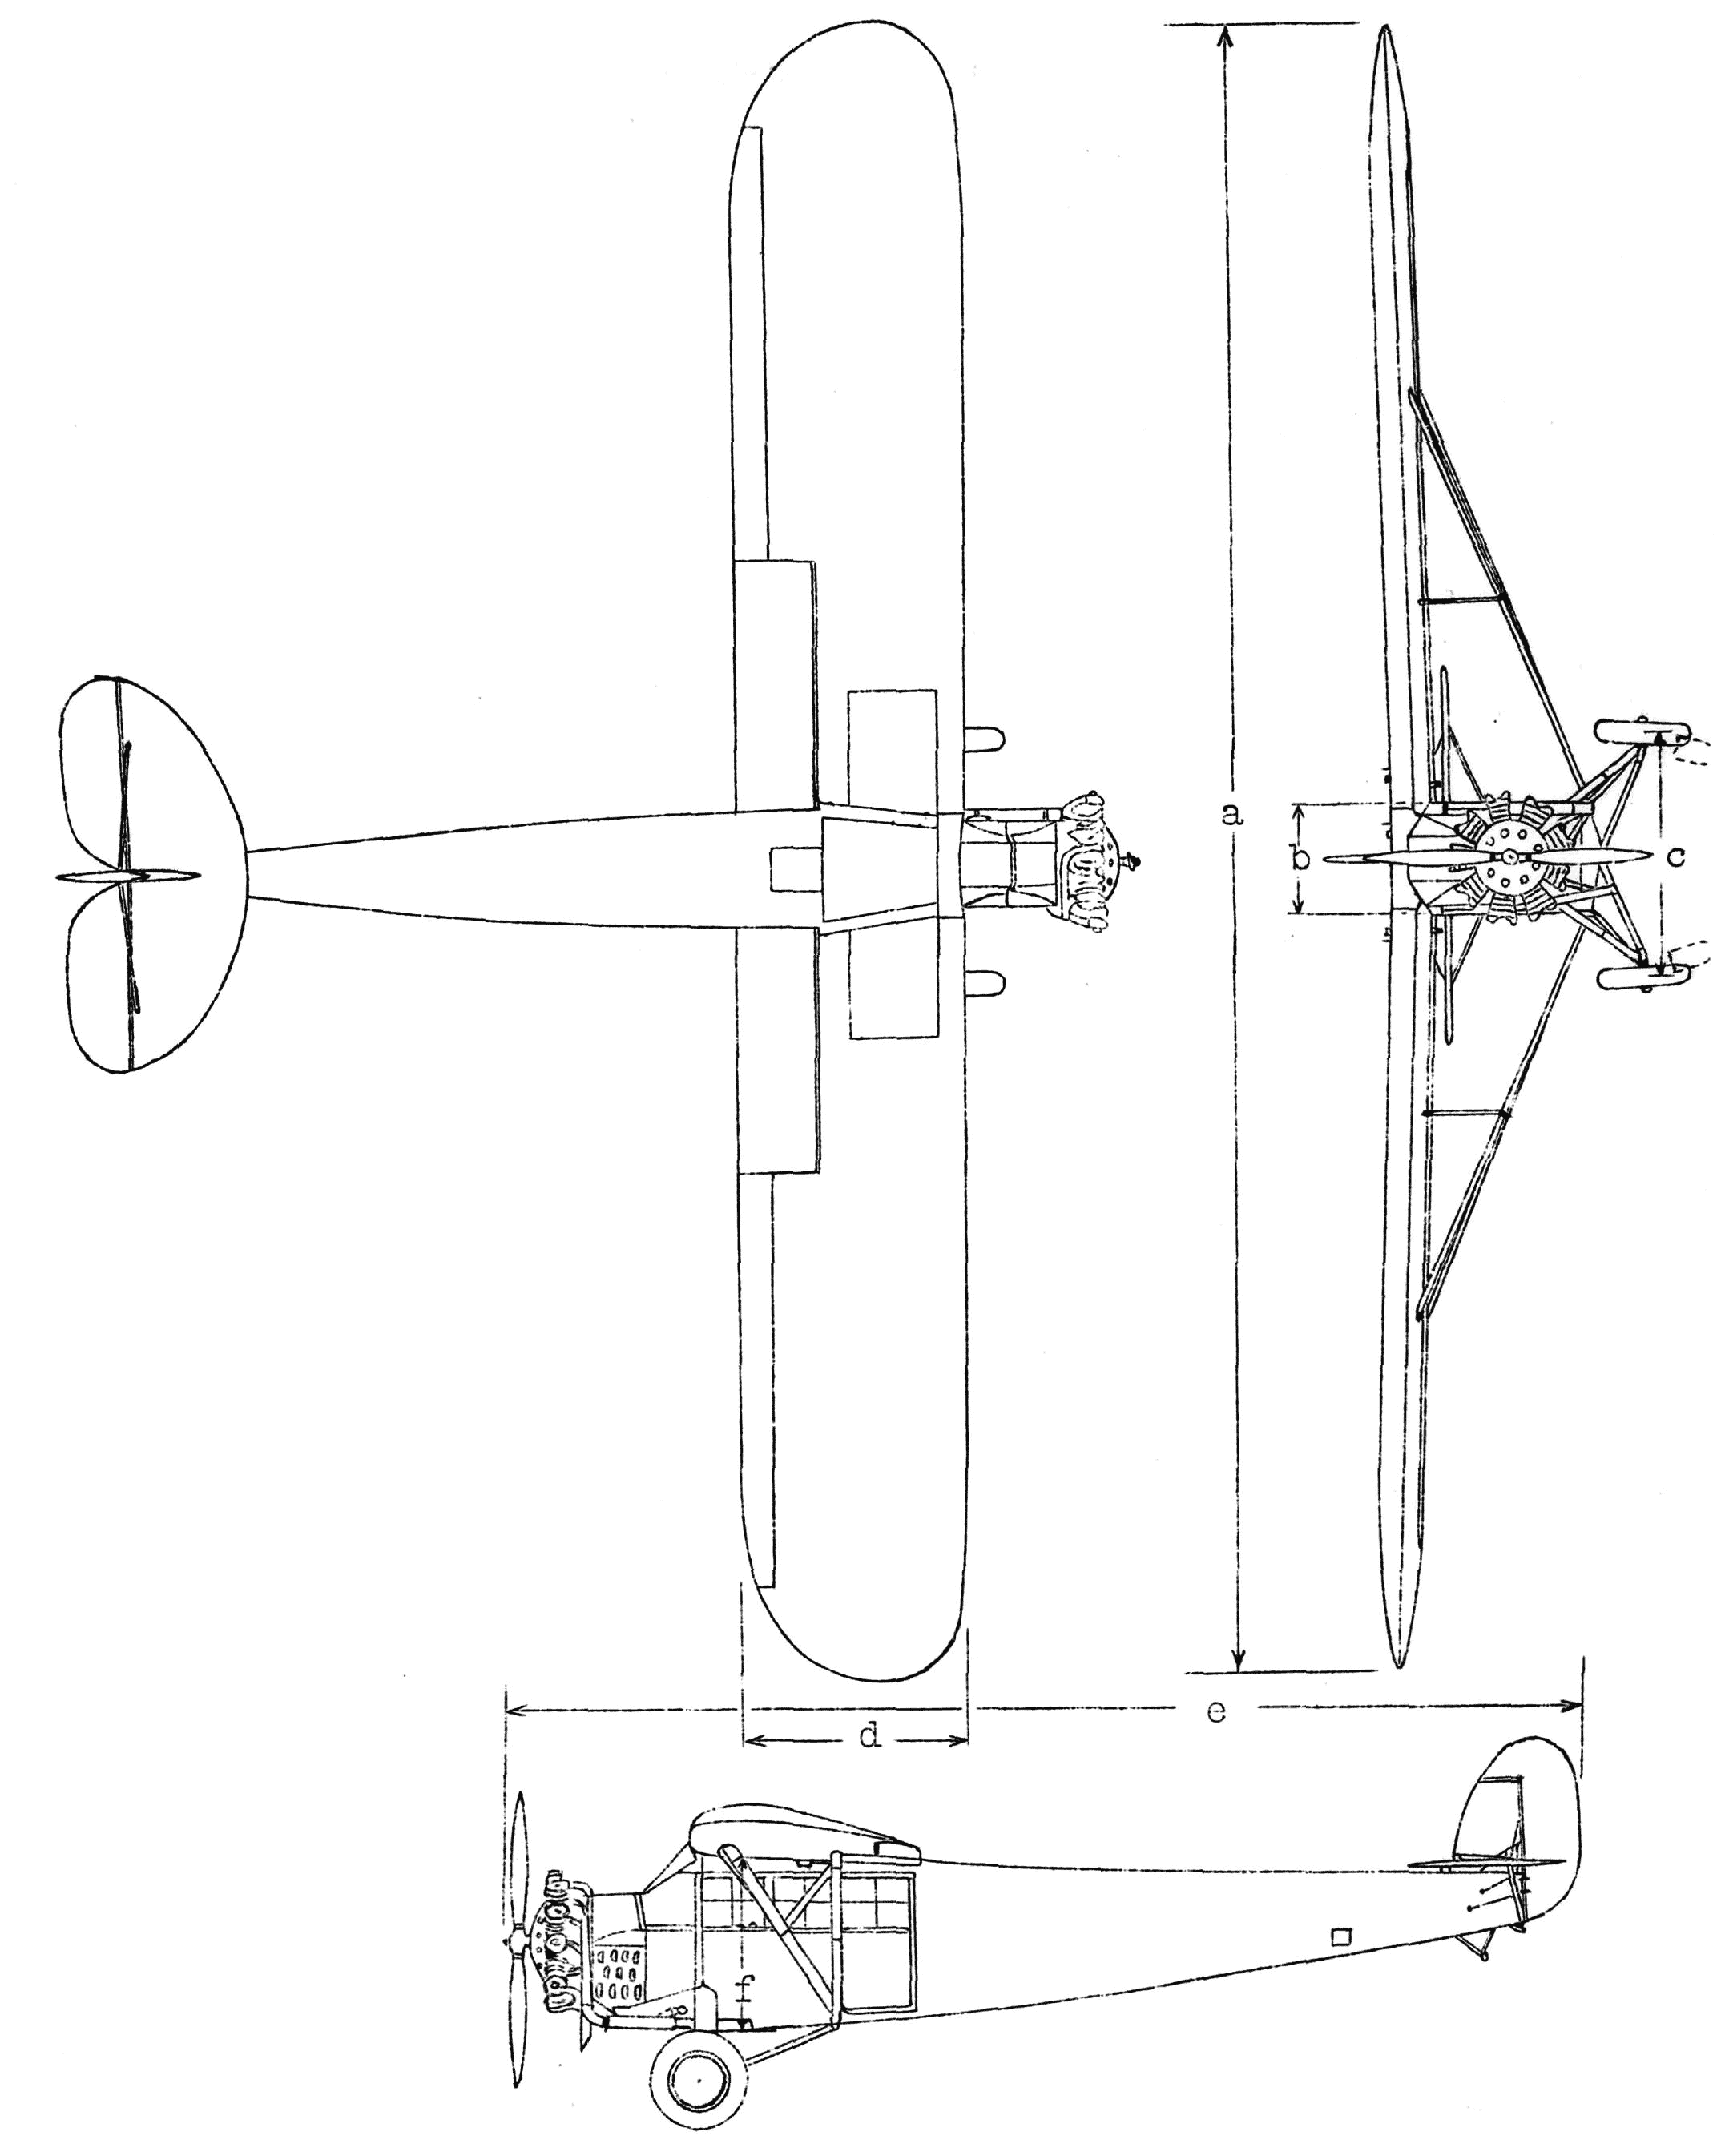 Fairchild FC-2 blueprint